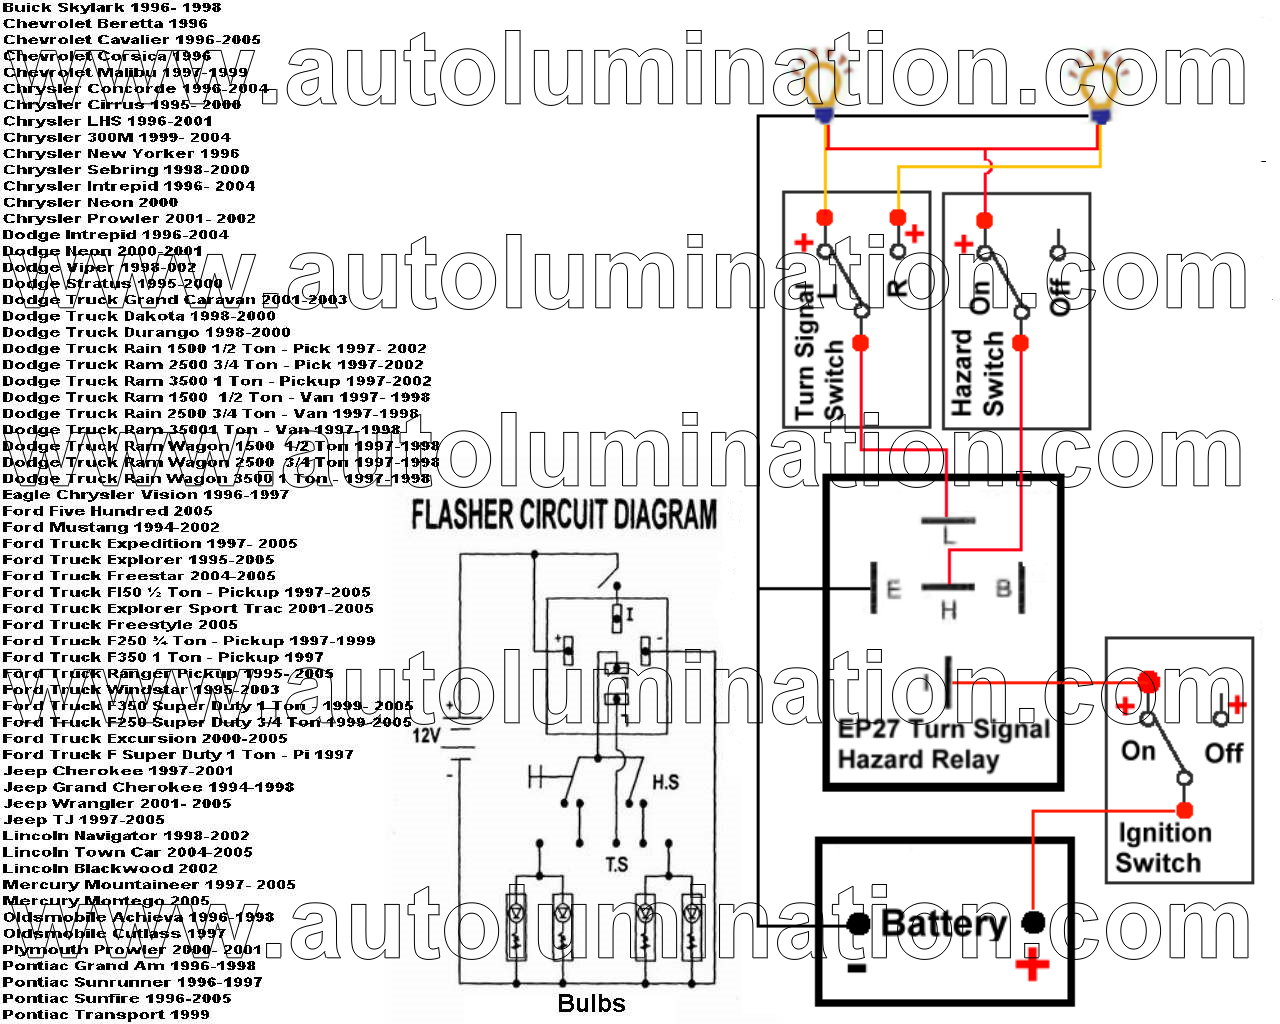 2005 suzuki gs500 turn signal wiring diagram